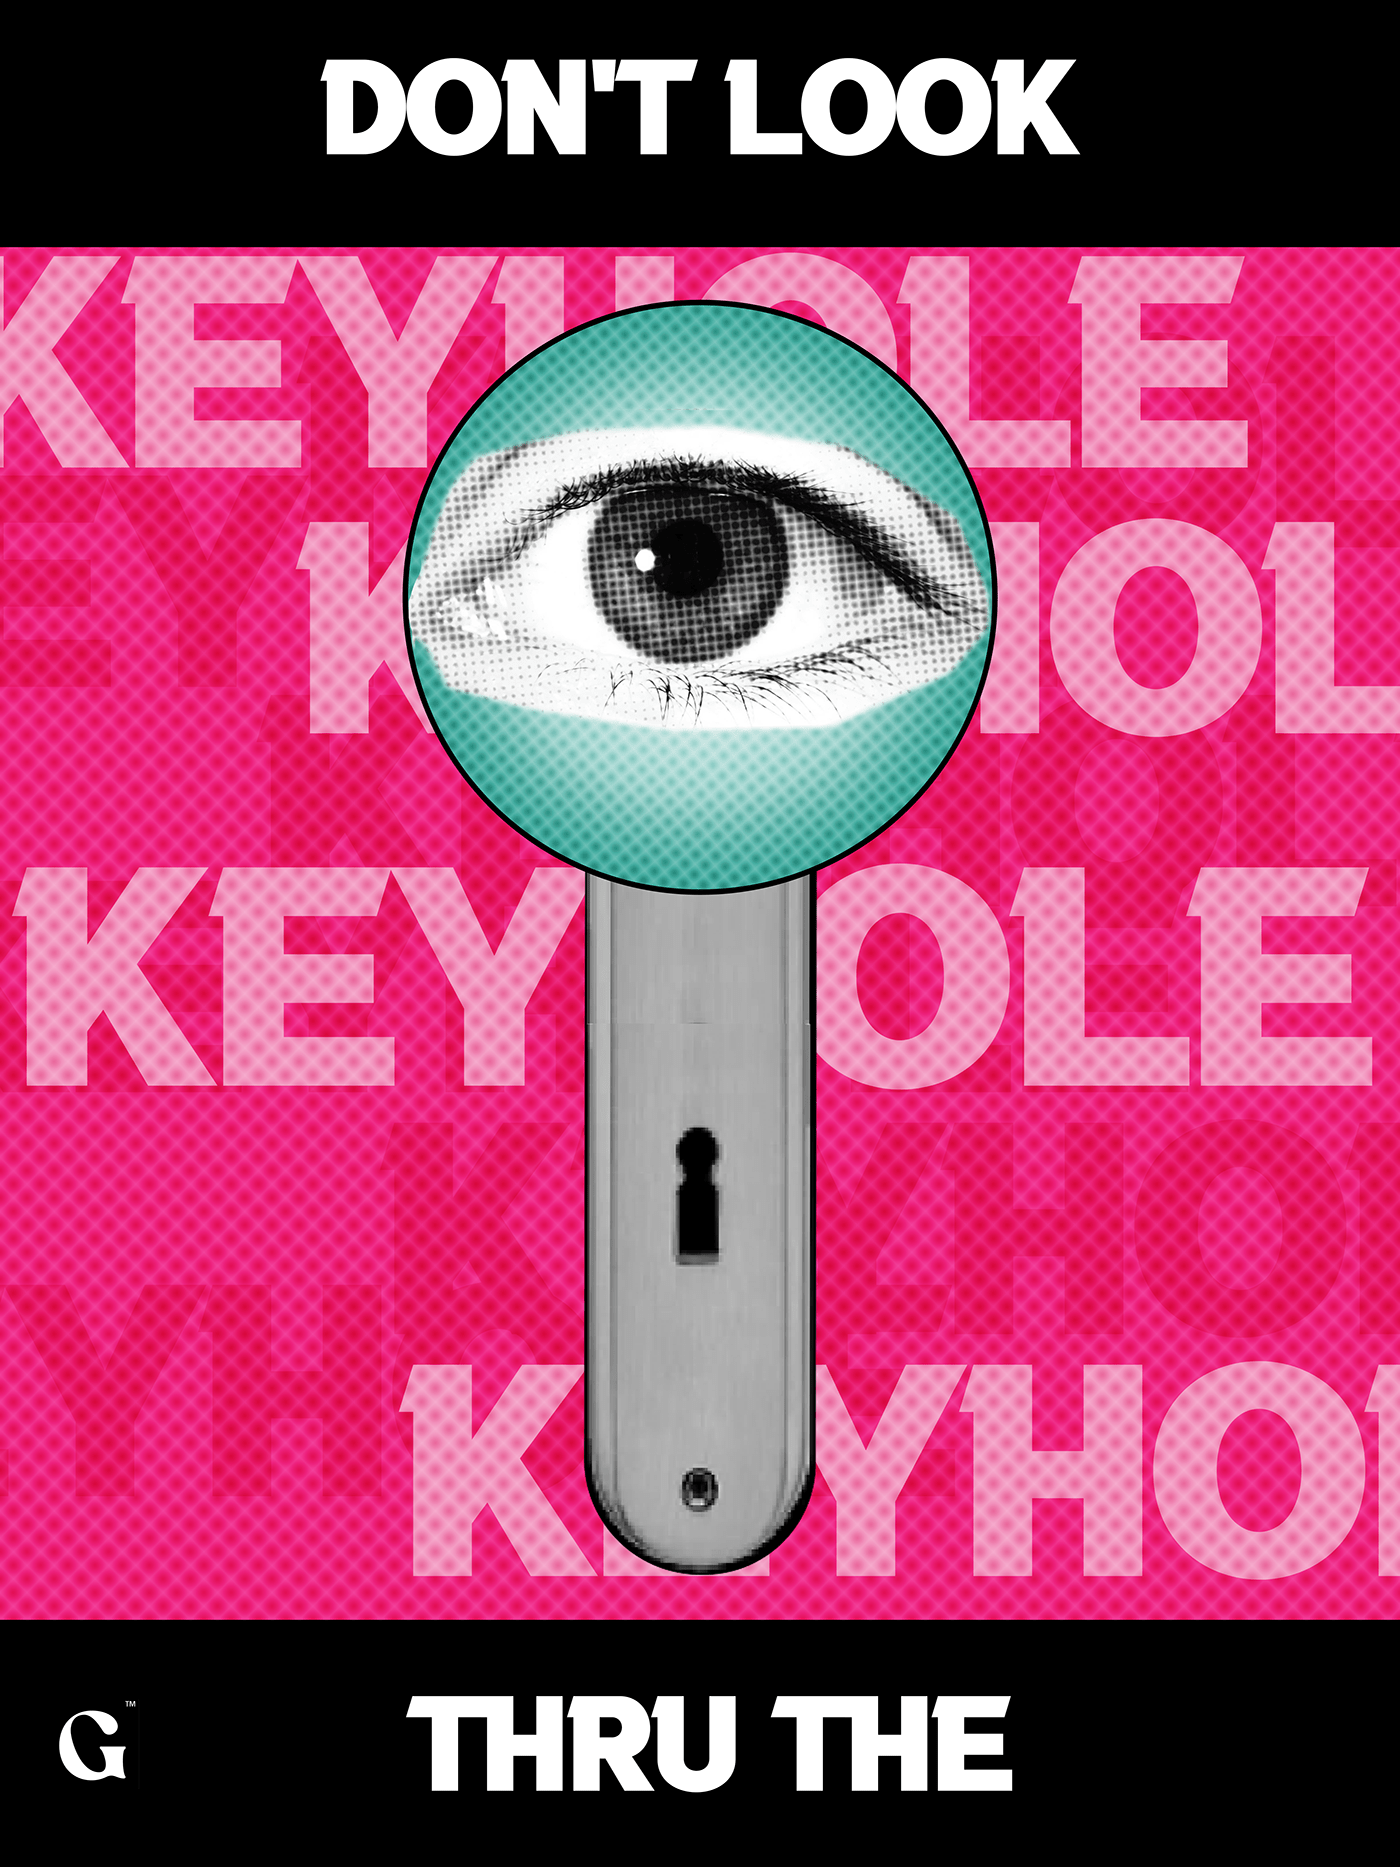 keyhole